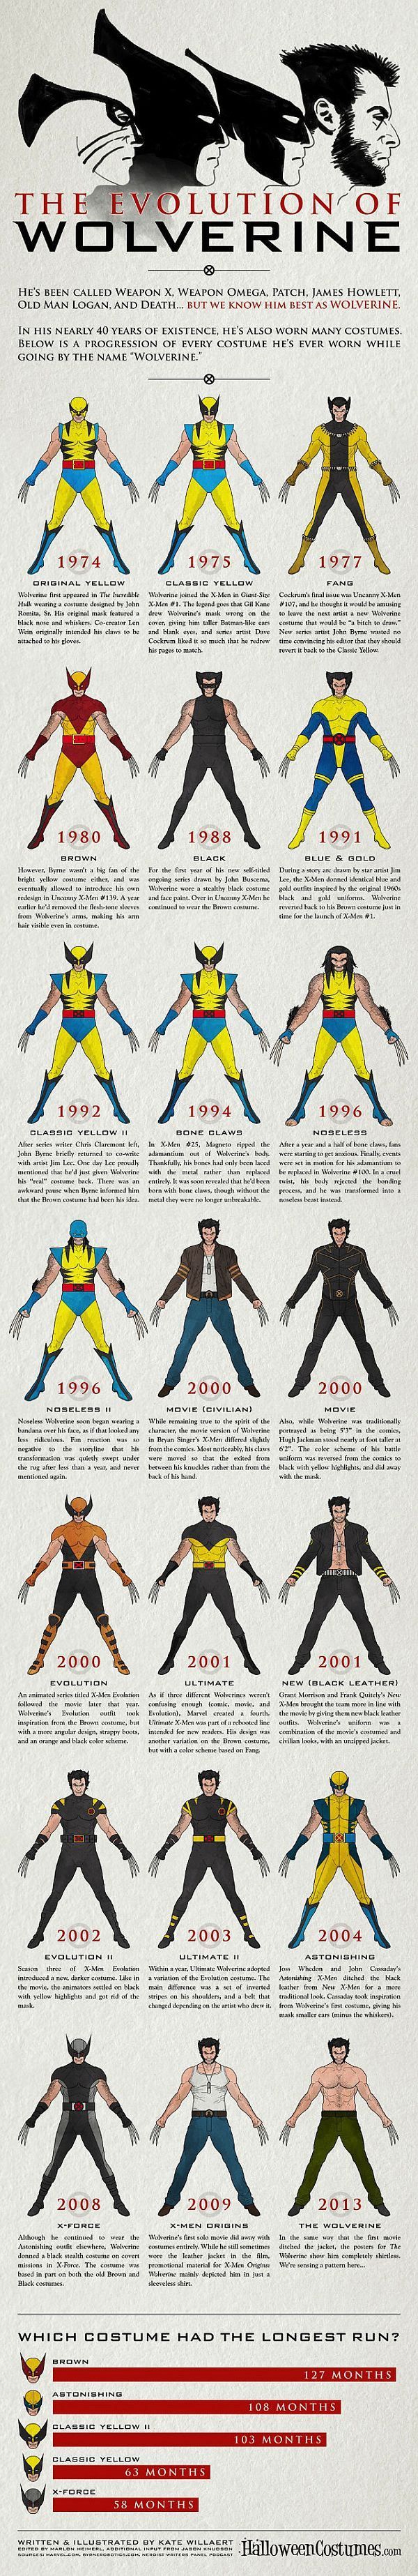 De evolutie van Wolverine